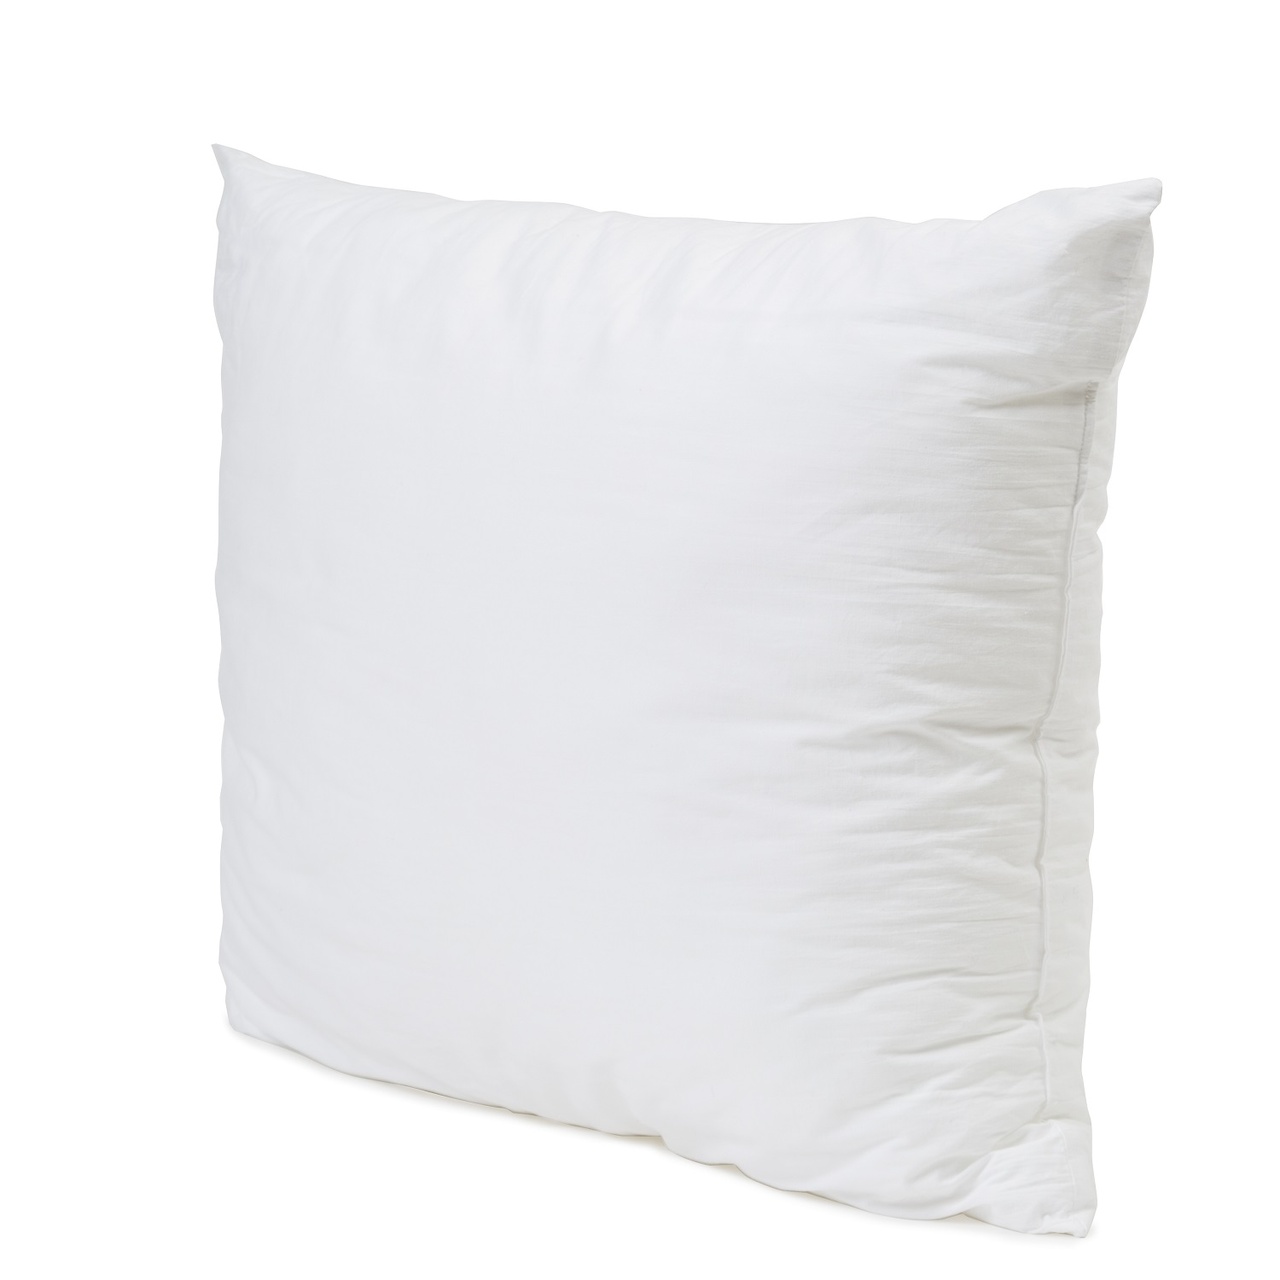 Pillow Comfort 50x60 cm, 450 g